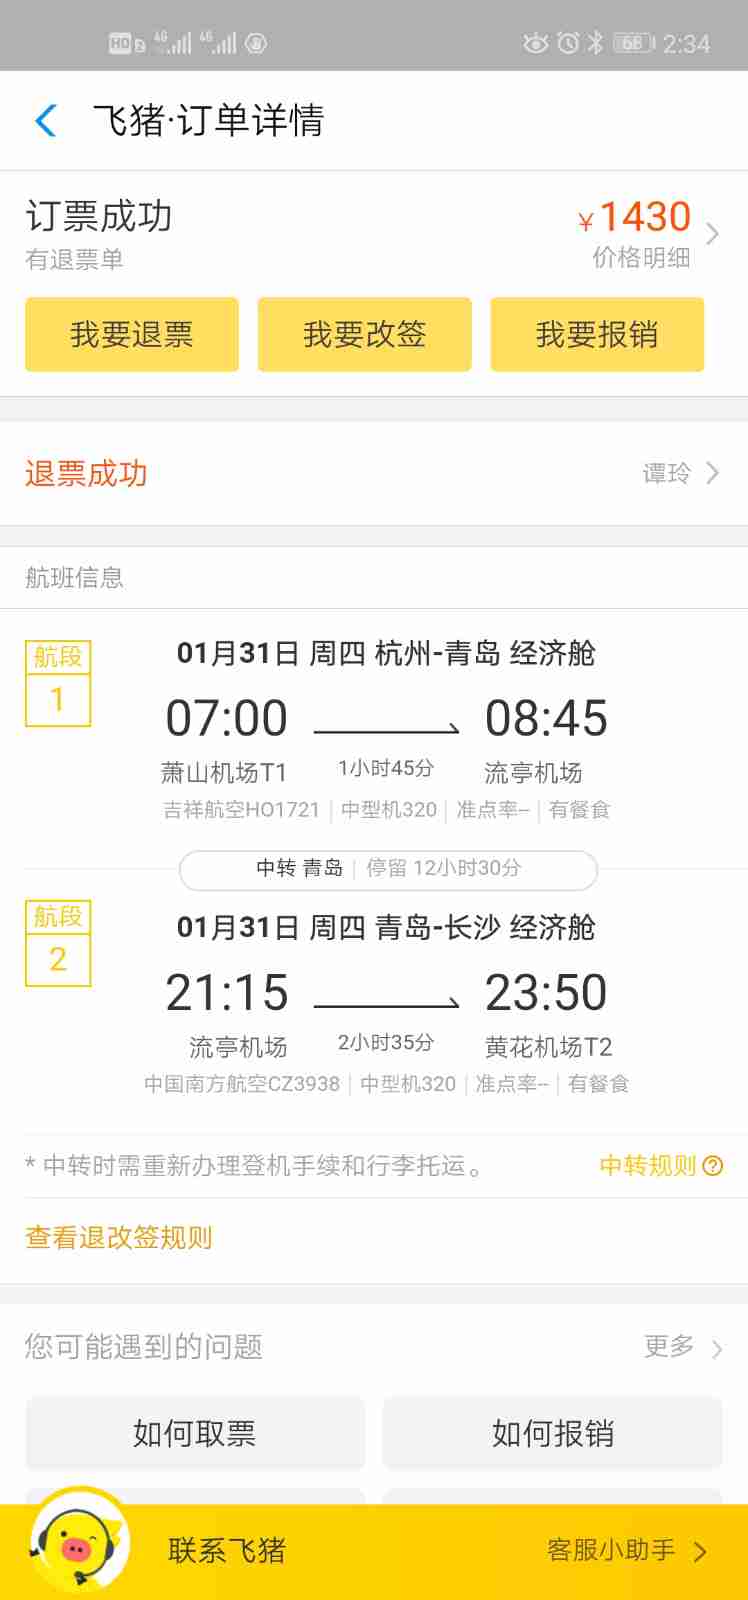 个人通过支付宝飞猪买了一张1月31日,杭州转青岛至长沙的机票1430元